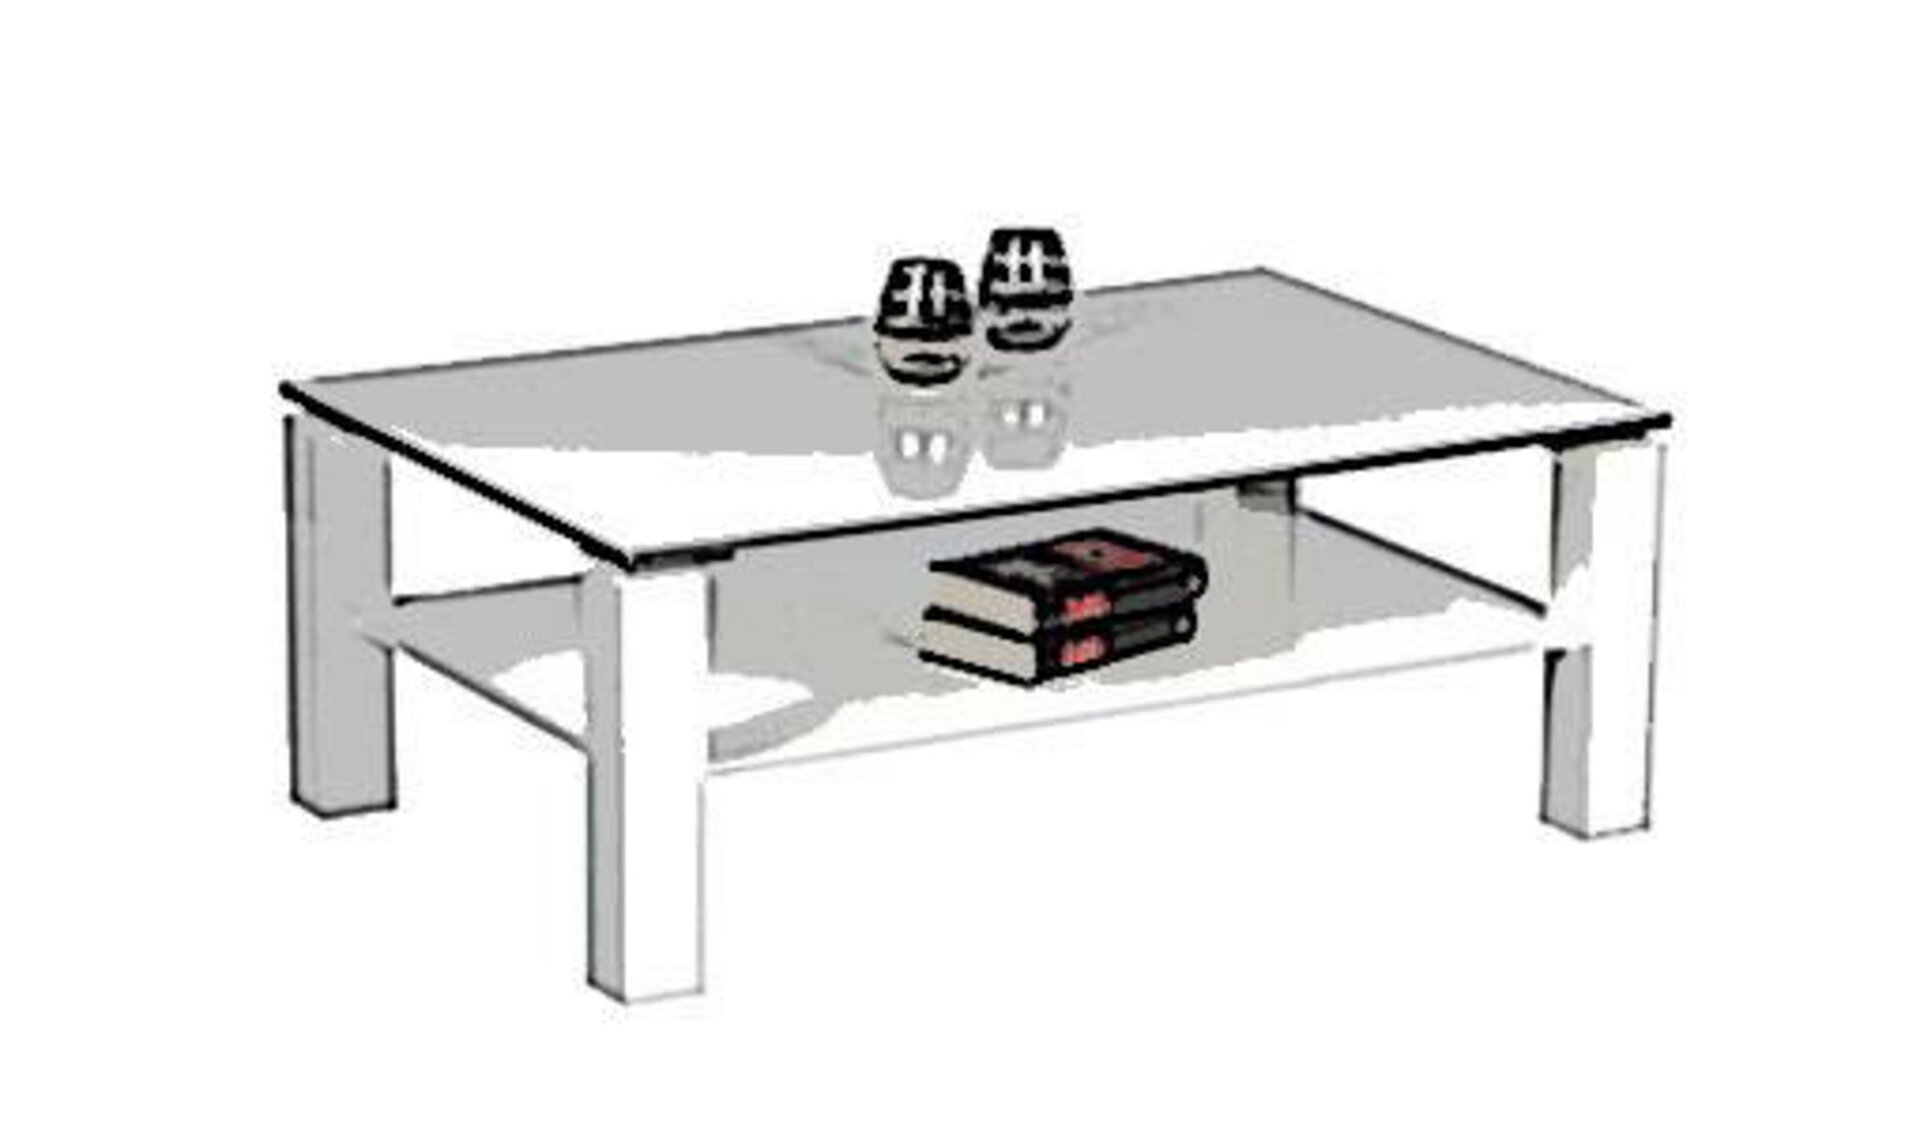 Stilisierter weißer Couchtisch in rechteckiger Form mit quadratischen Tischbeinen und Ablagefläche unterhalb der Tischplatte.